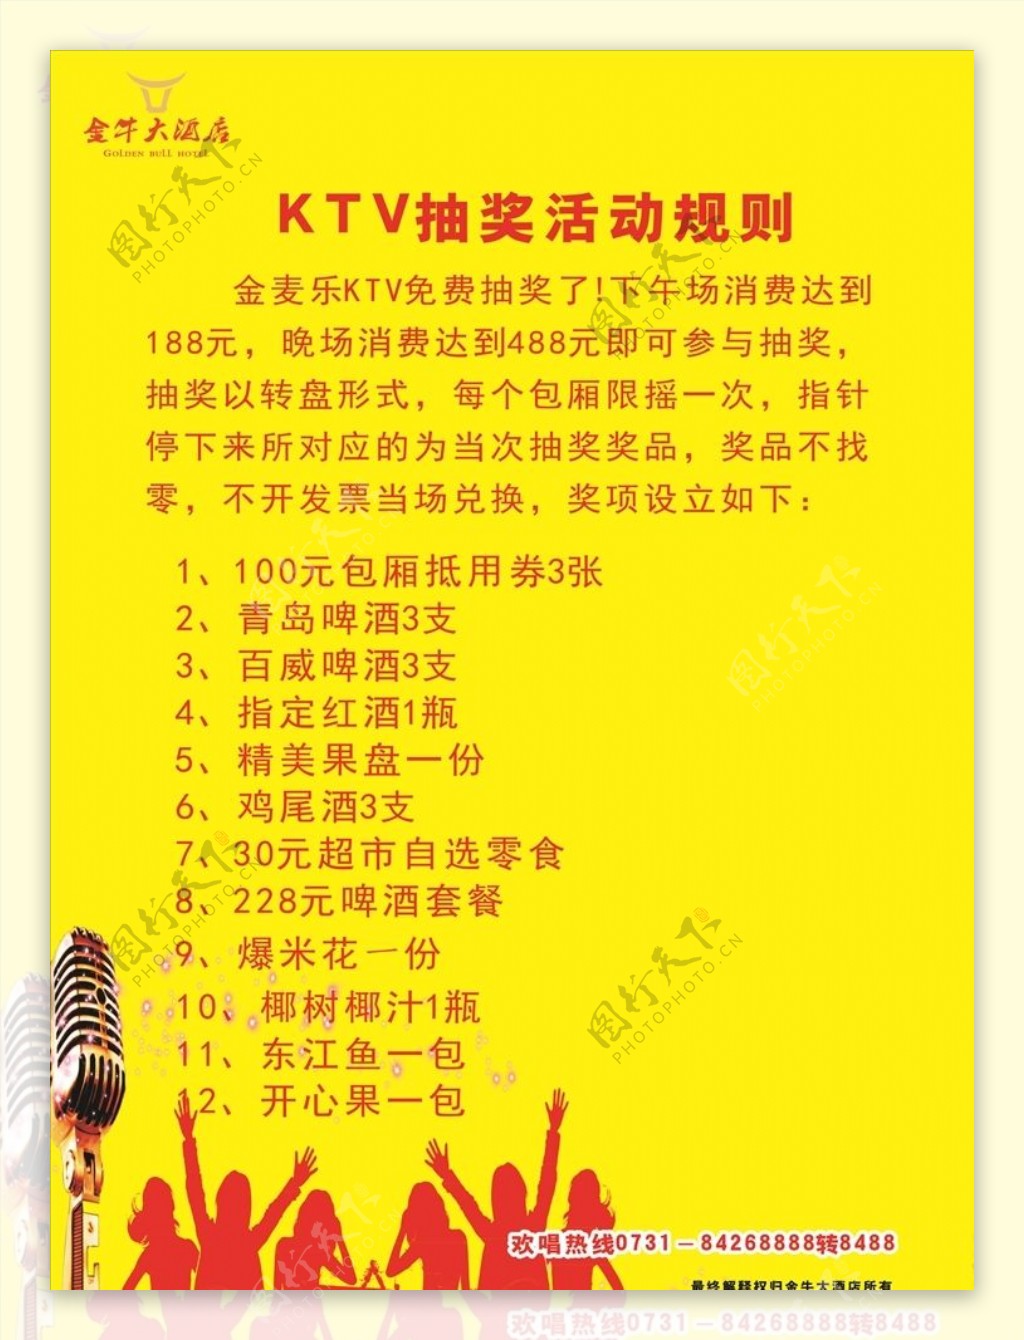 KTV抽奖活动规则